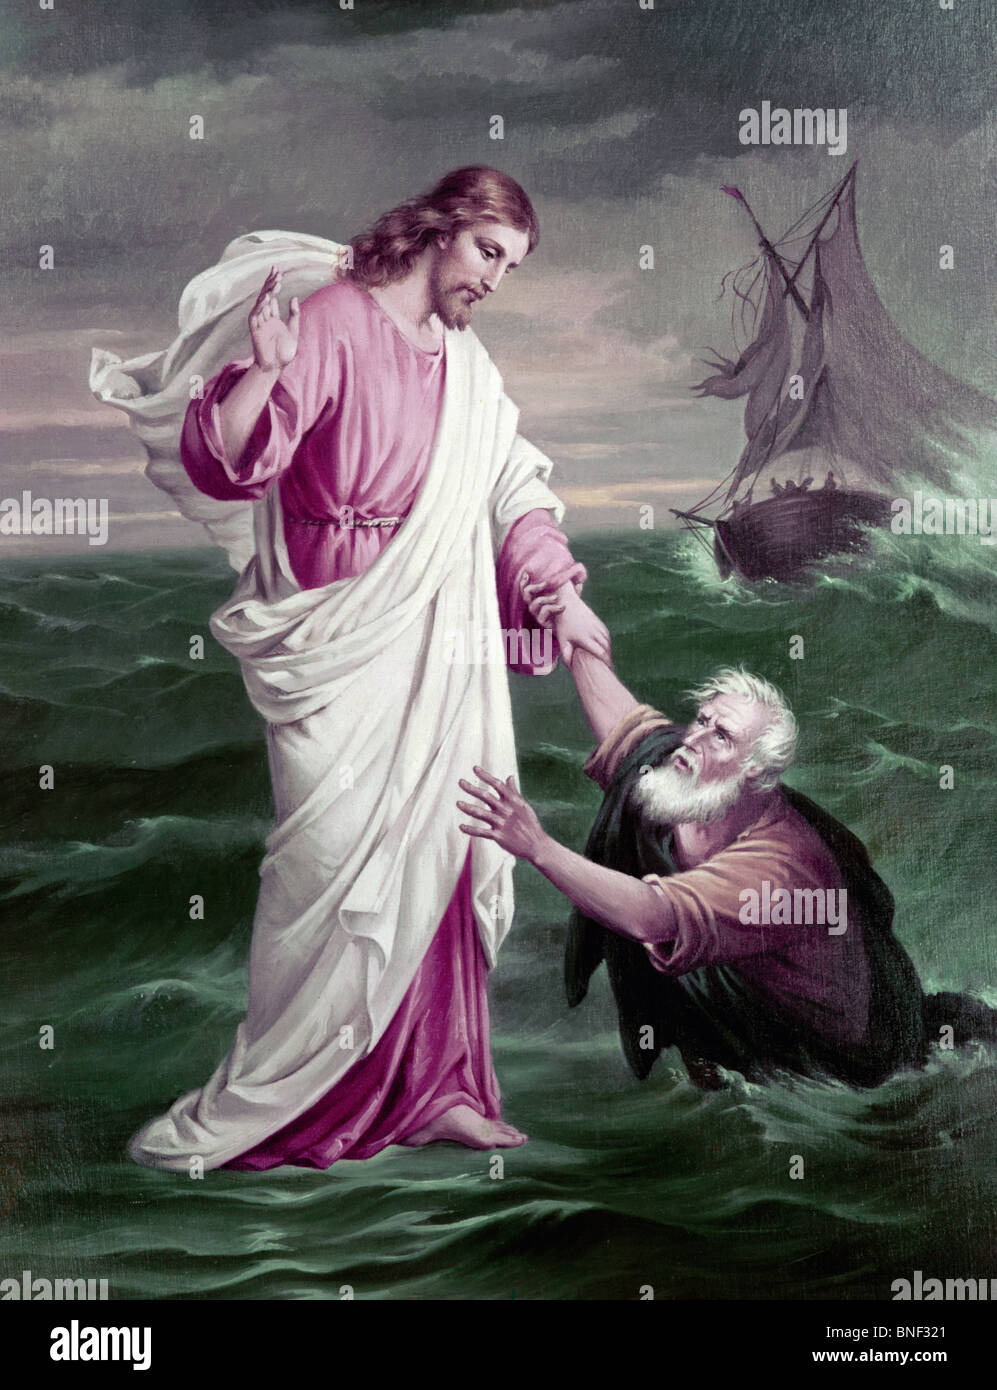 jesus-saving-drowning-saint-peter-stock-photo-alamy